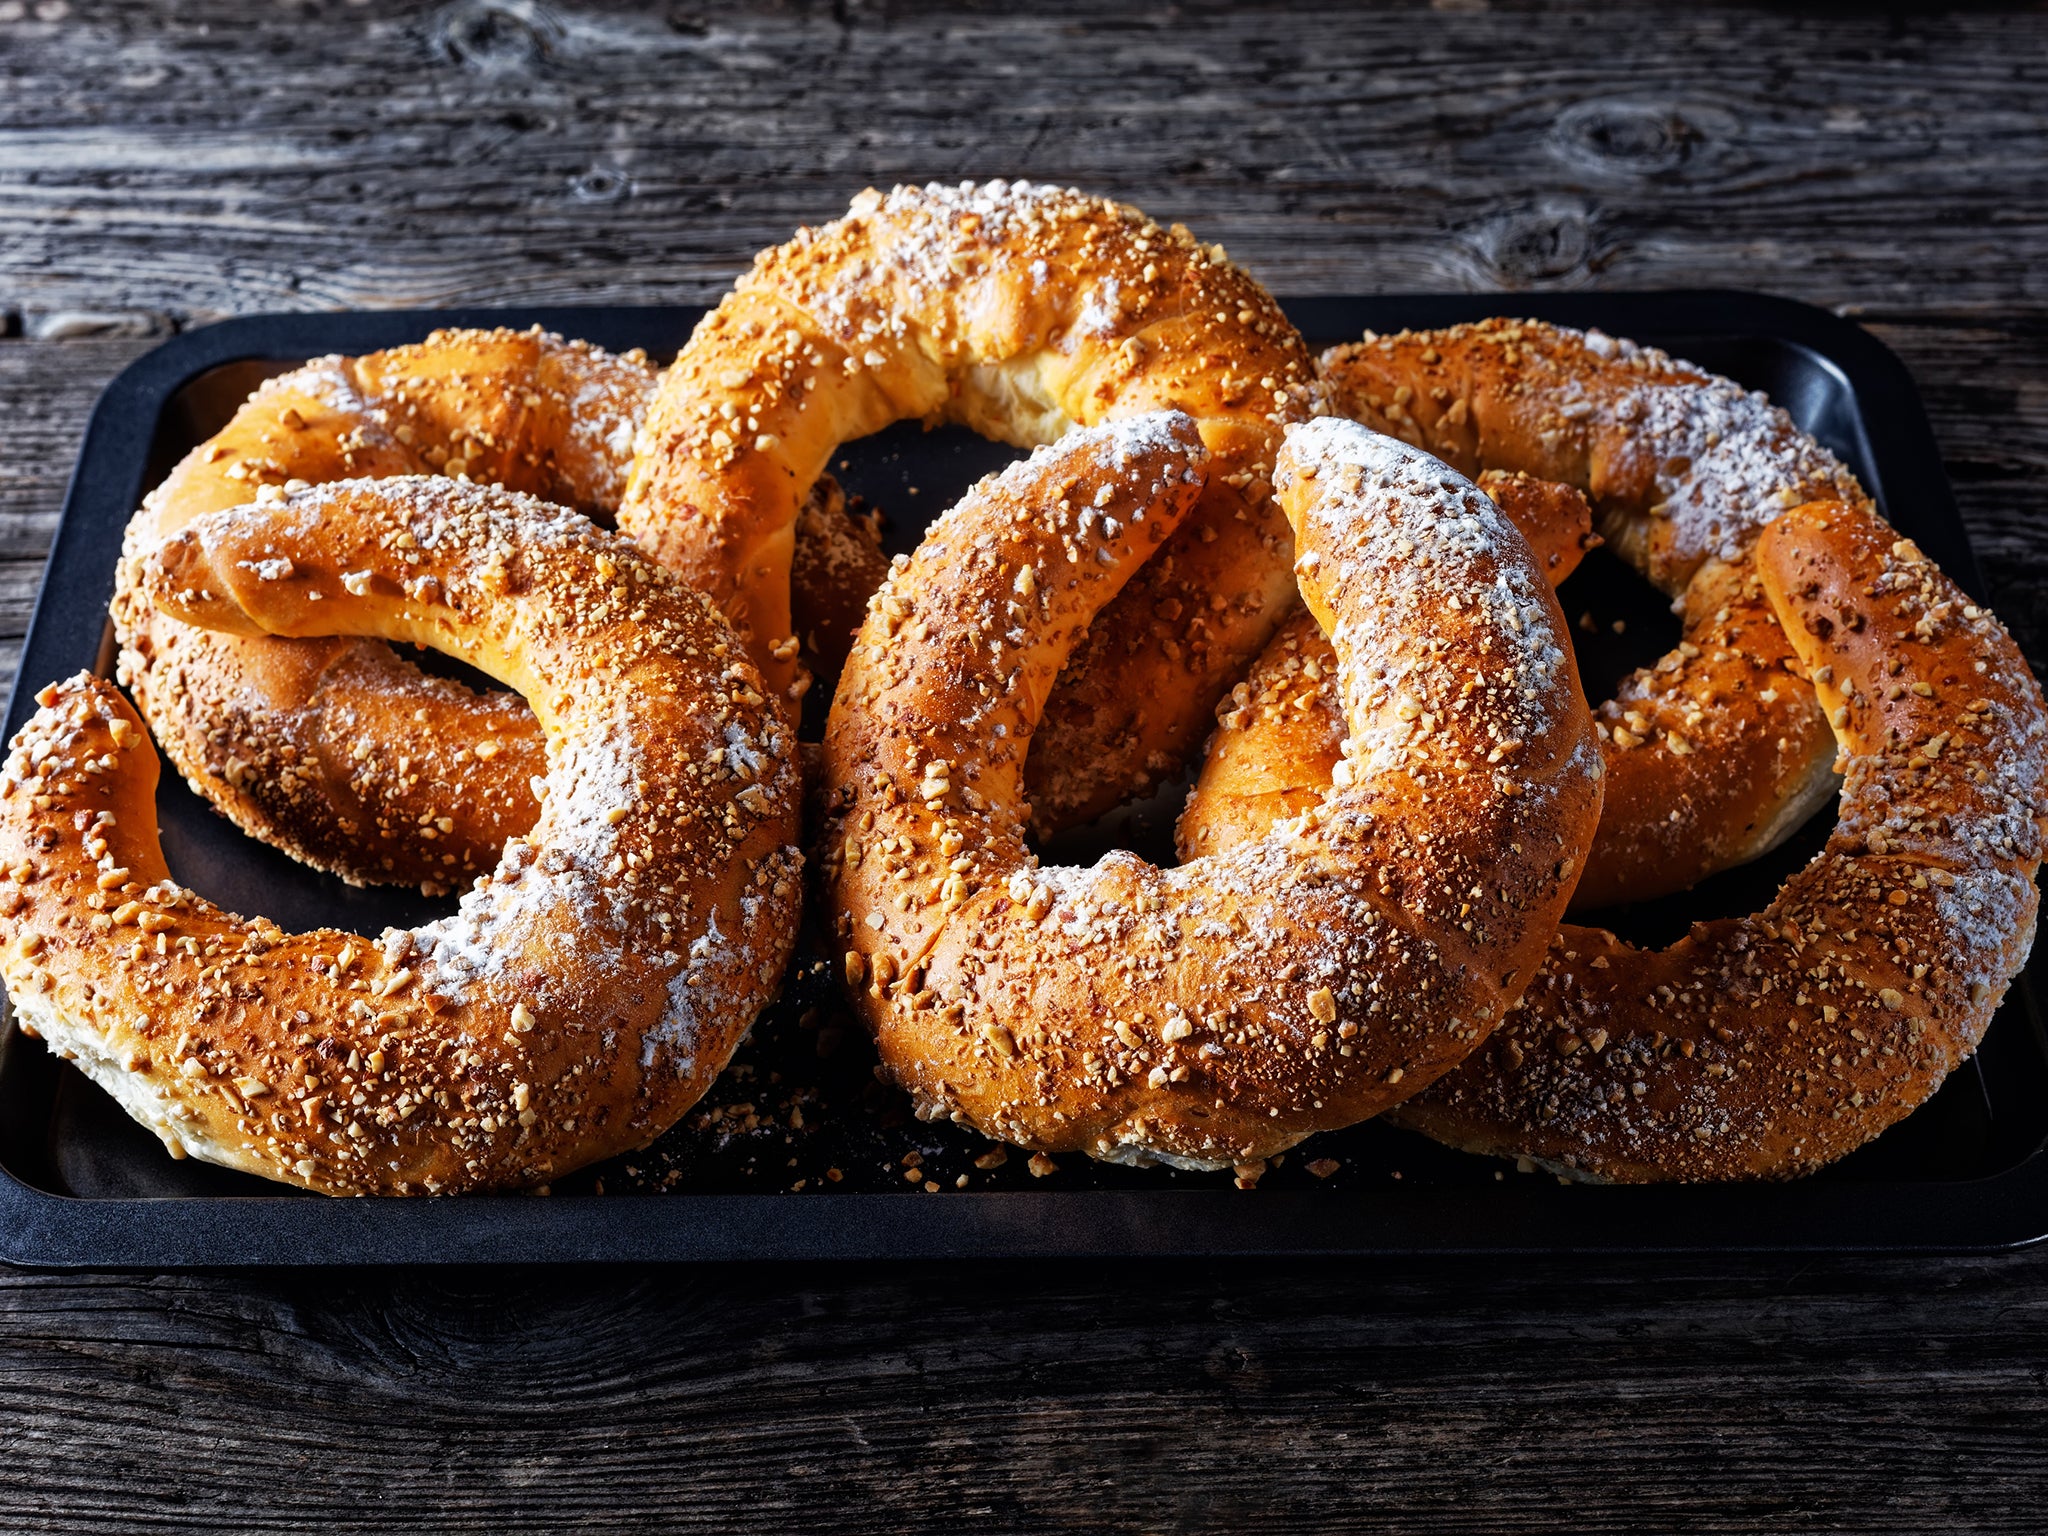 Kipferls, crescent-shaped breads, have been around in Austria for centuries